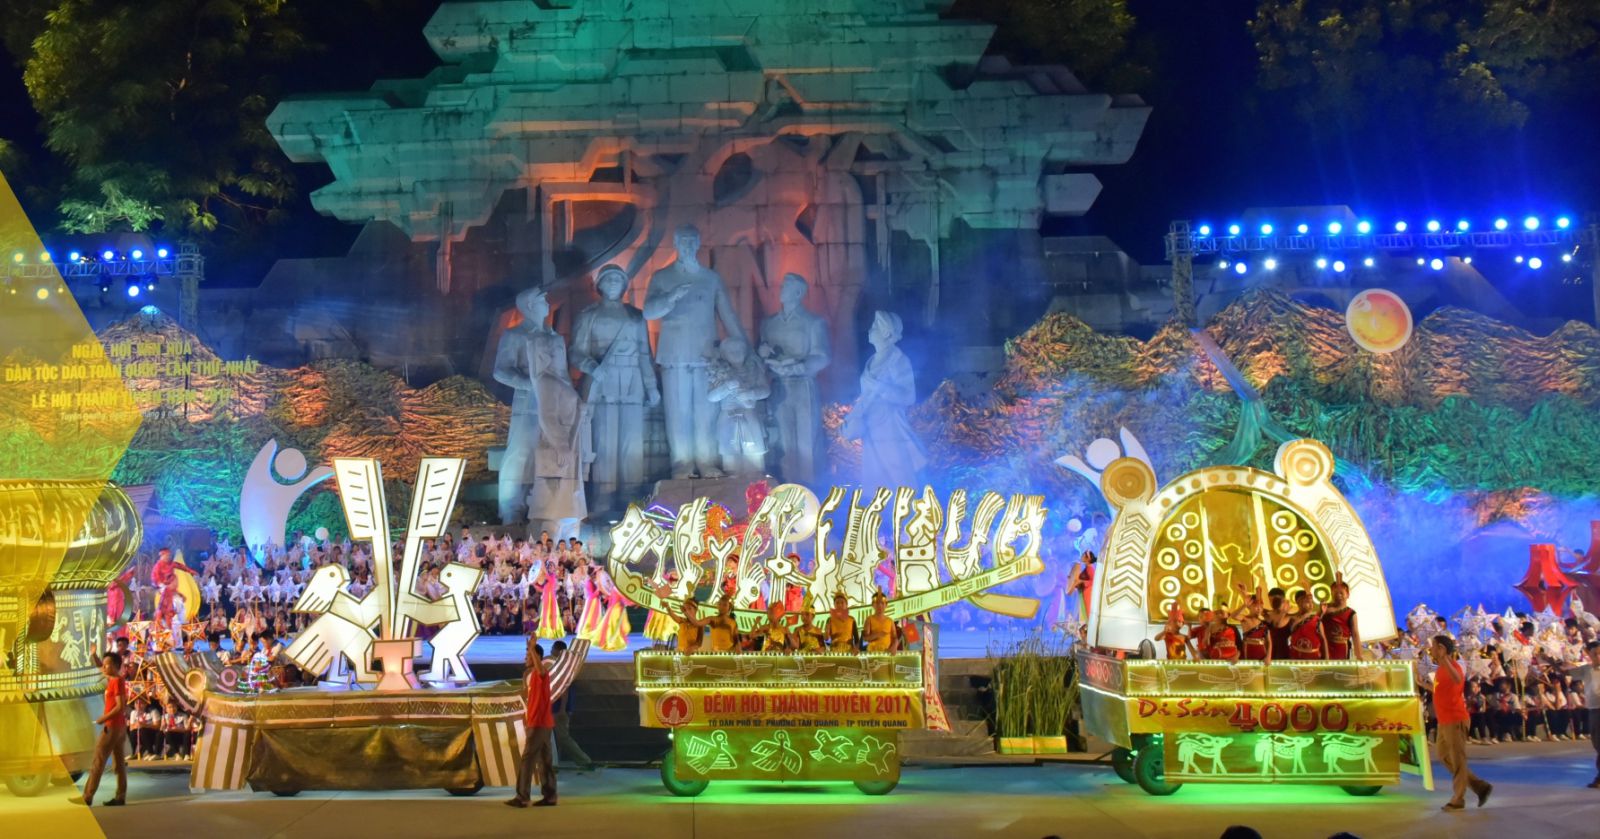 Lễ hội Thành Tuyên đã được Kỷ lục Guiness Việt Nam xác nhận có mâm cỗ Trung thu lớn nhất và Lễ hội có nhiều mô hình đèn trung thu độc đáo, hấp dẫn và lớn nhất Việt Nam.